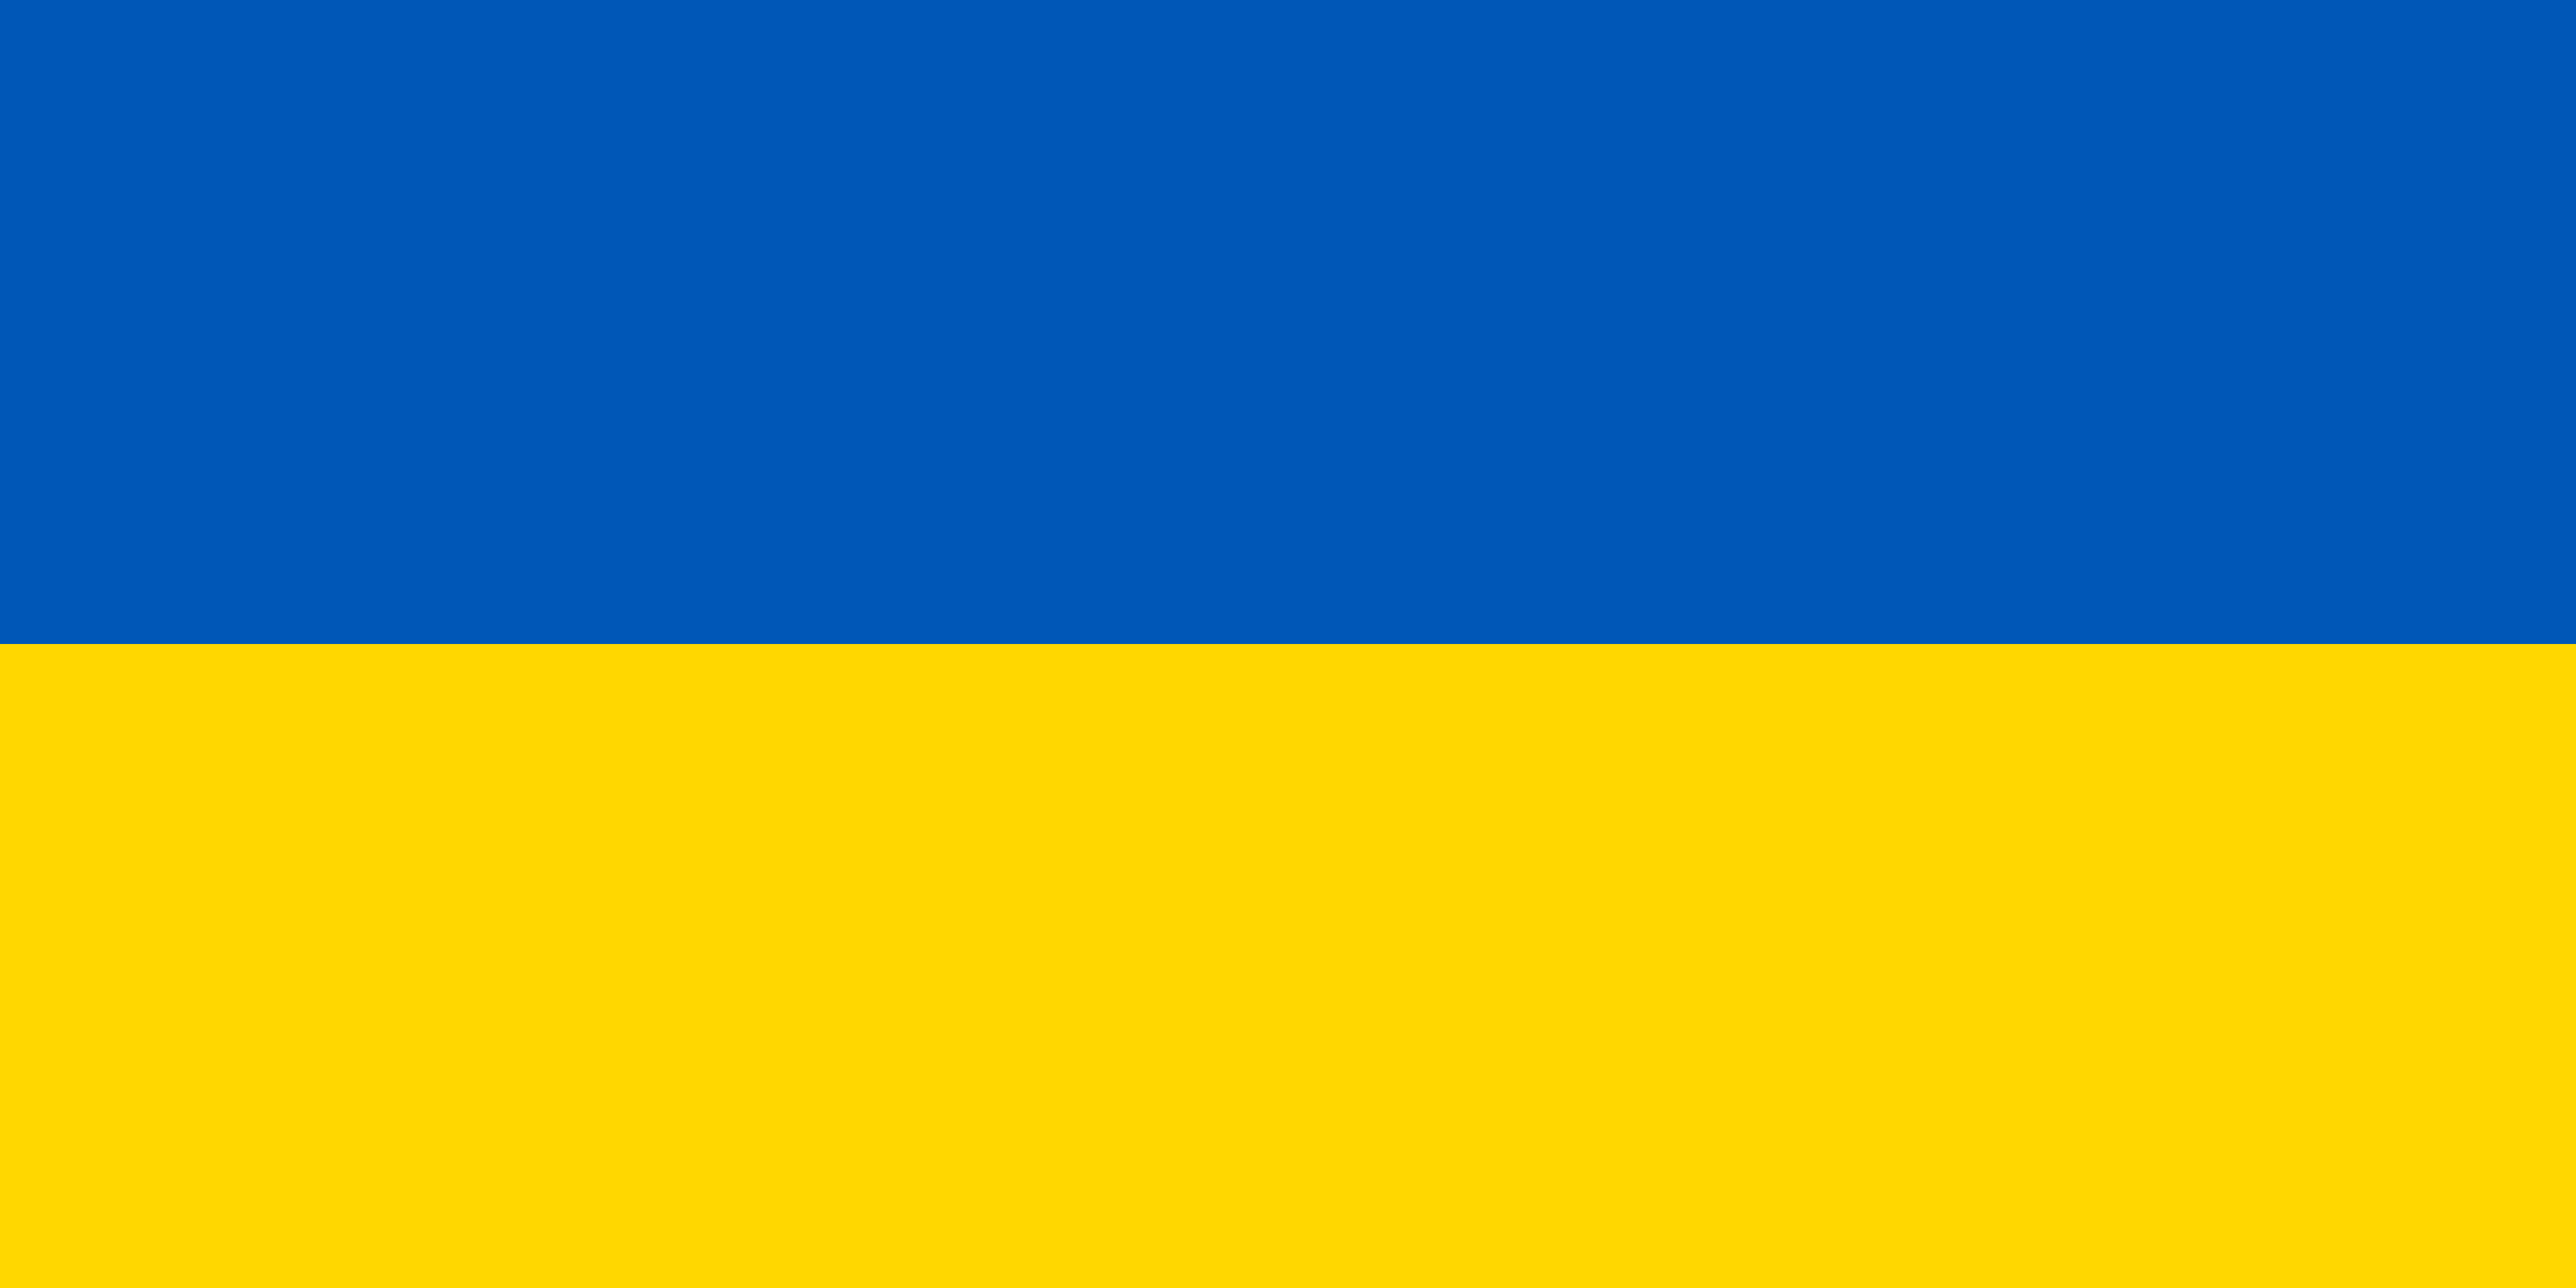 Imagen representando el azul y el amarillo de la bandera ucraniana